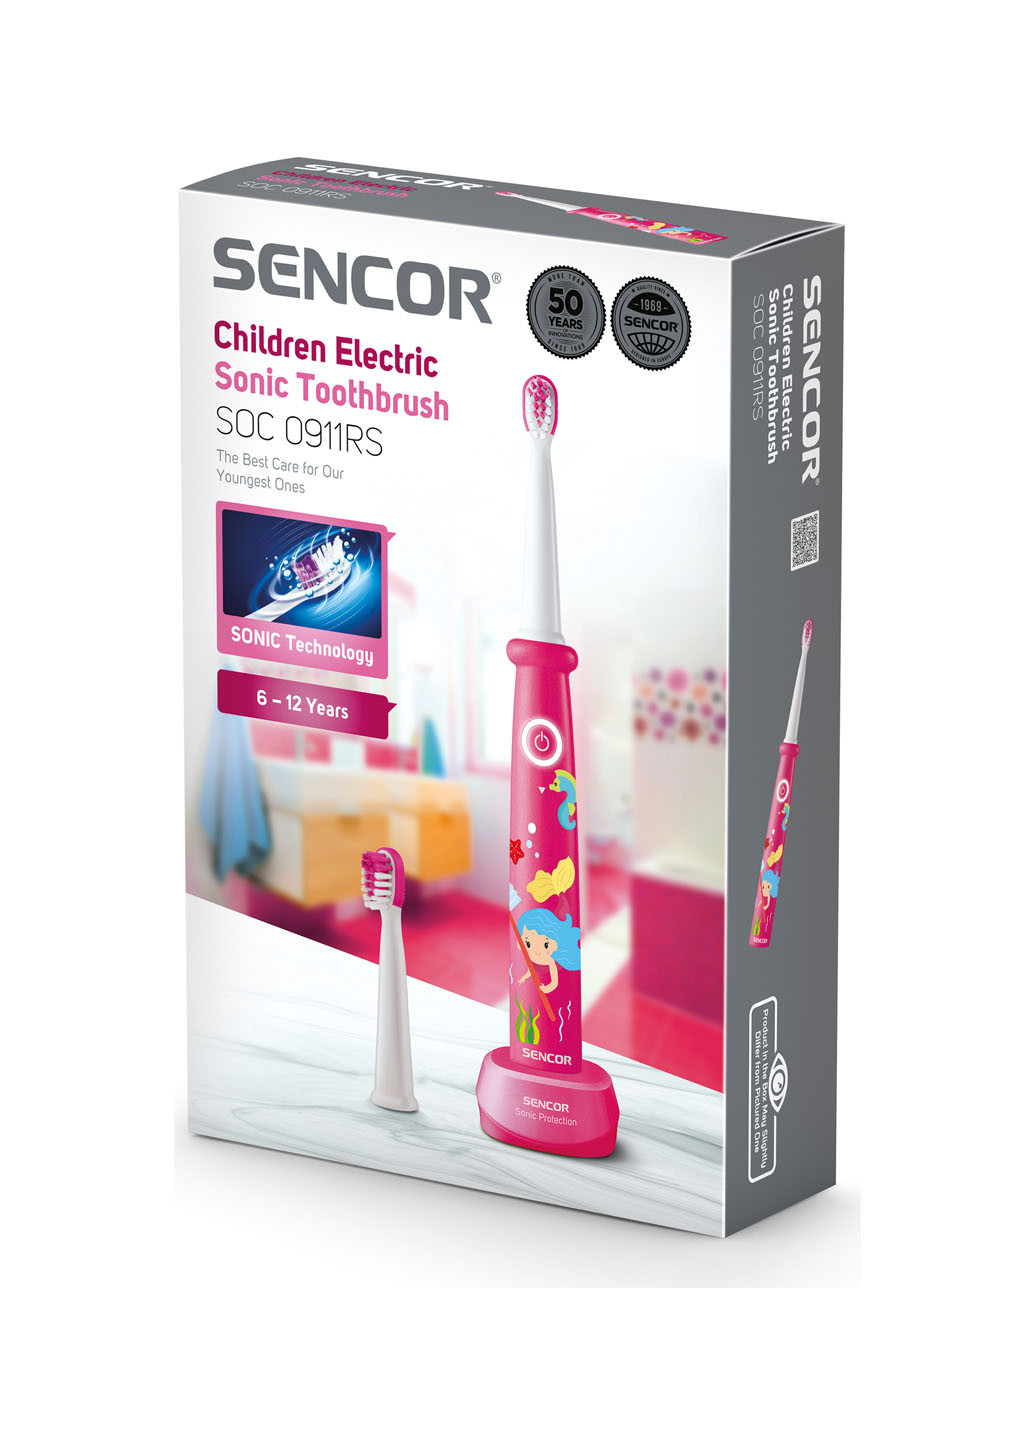 Электрическая зубная щетка детская Sencor soc0911rs (149310408)